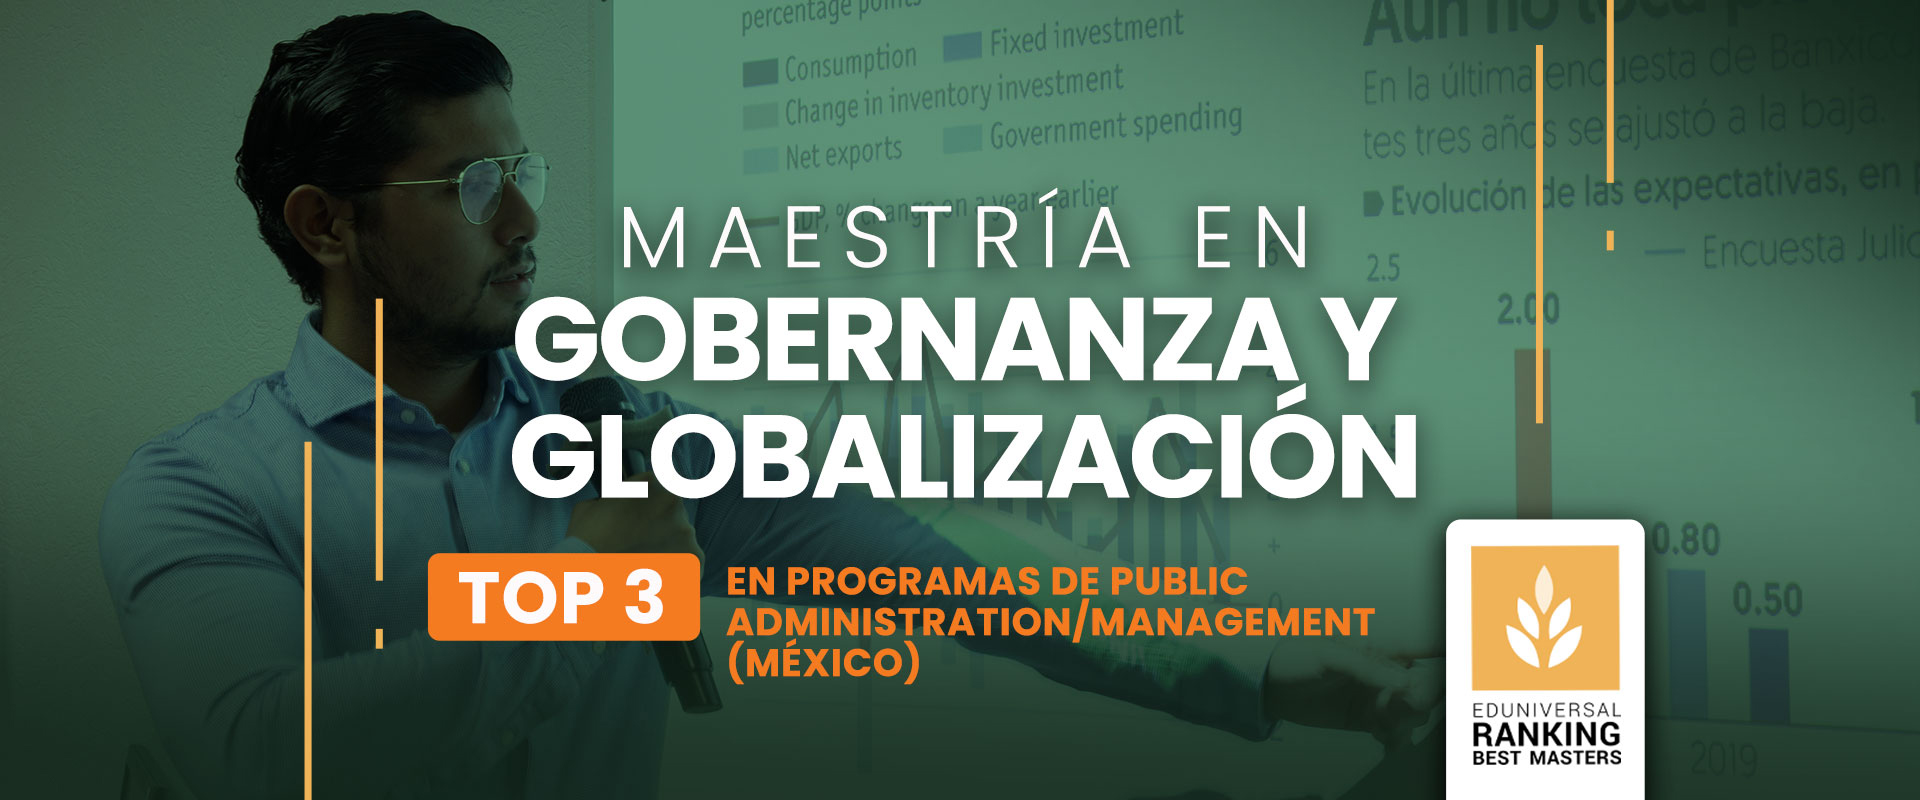 Maestría en Gobernanza y Globalización - Universidad de las Américas Puebla (UDLAP)